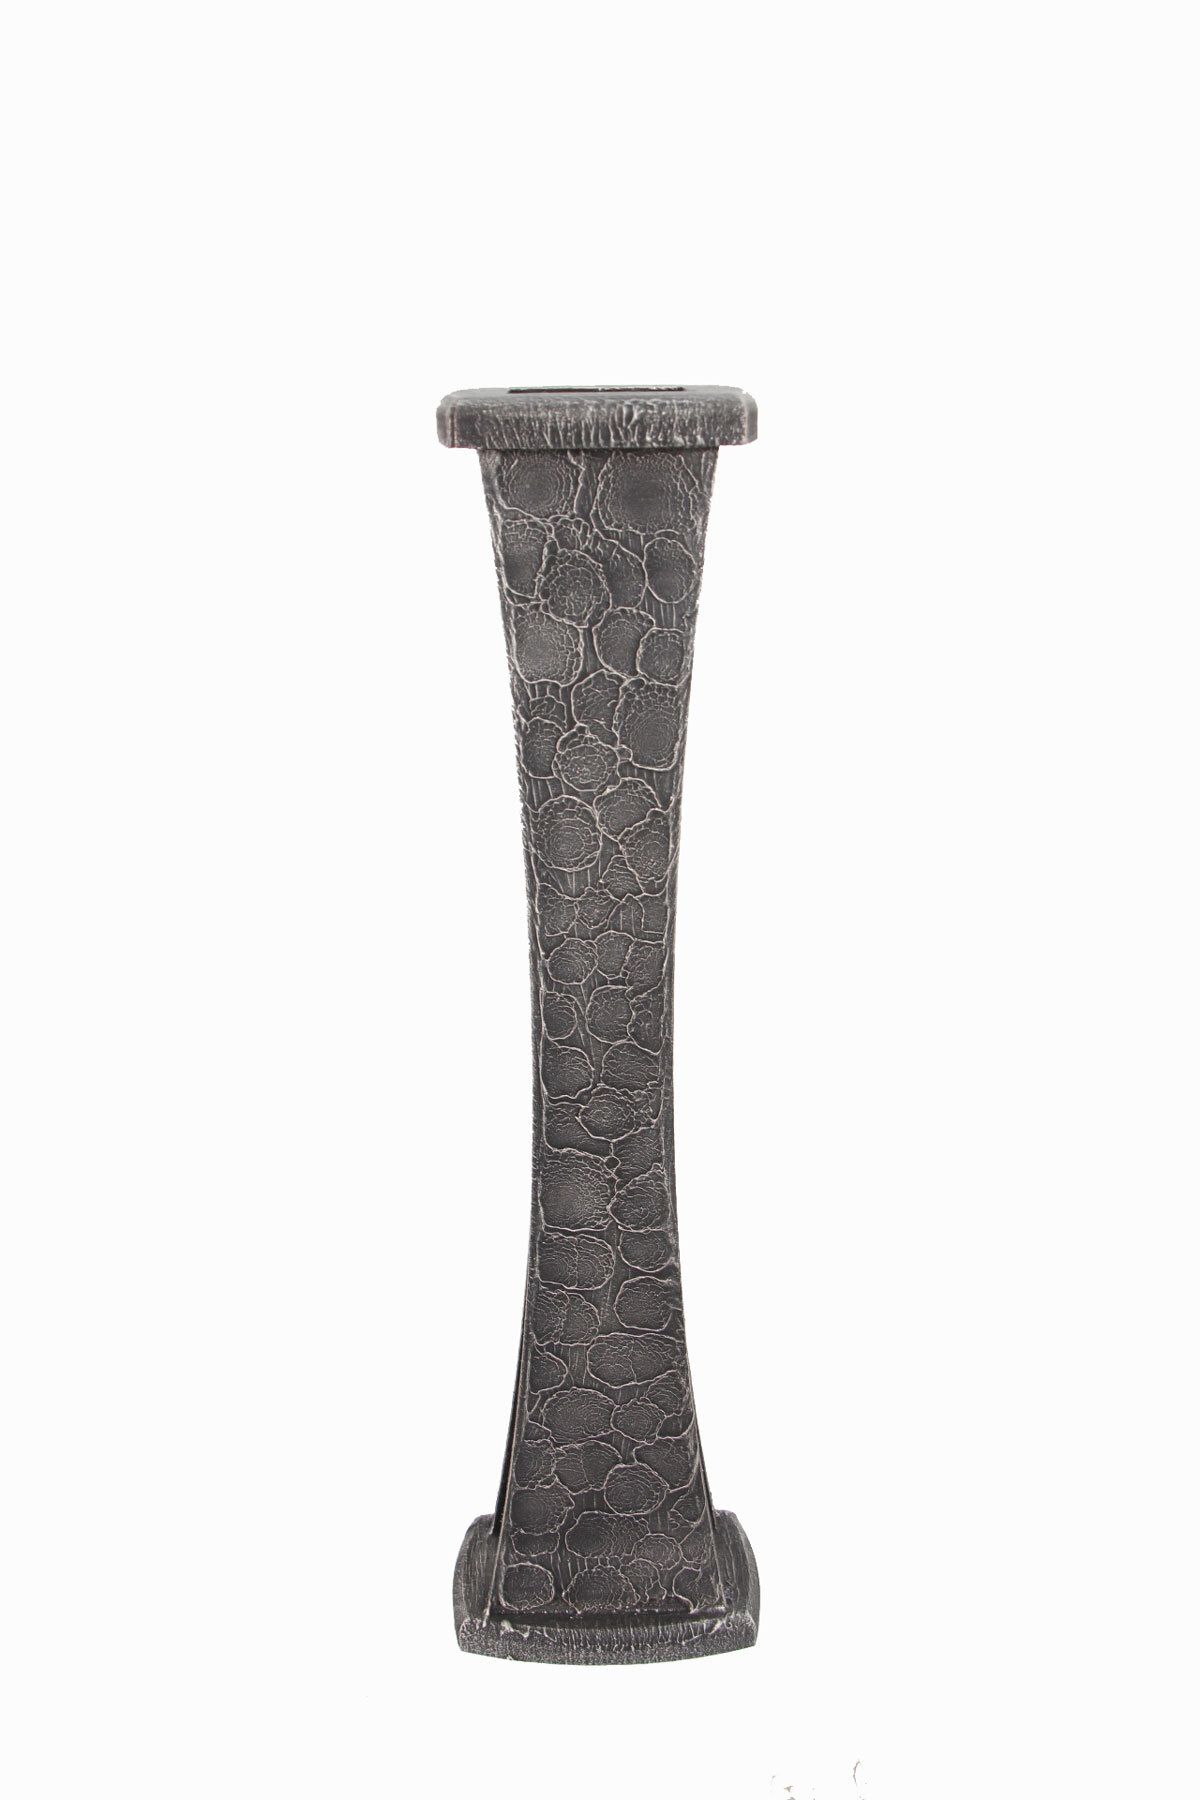 HobiMax 60 Cm Dekoratif Ahşap Ince Belli Vazo Gümüş İtalyan Eskitme